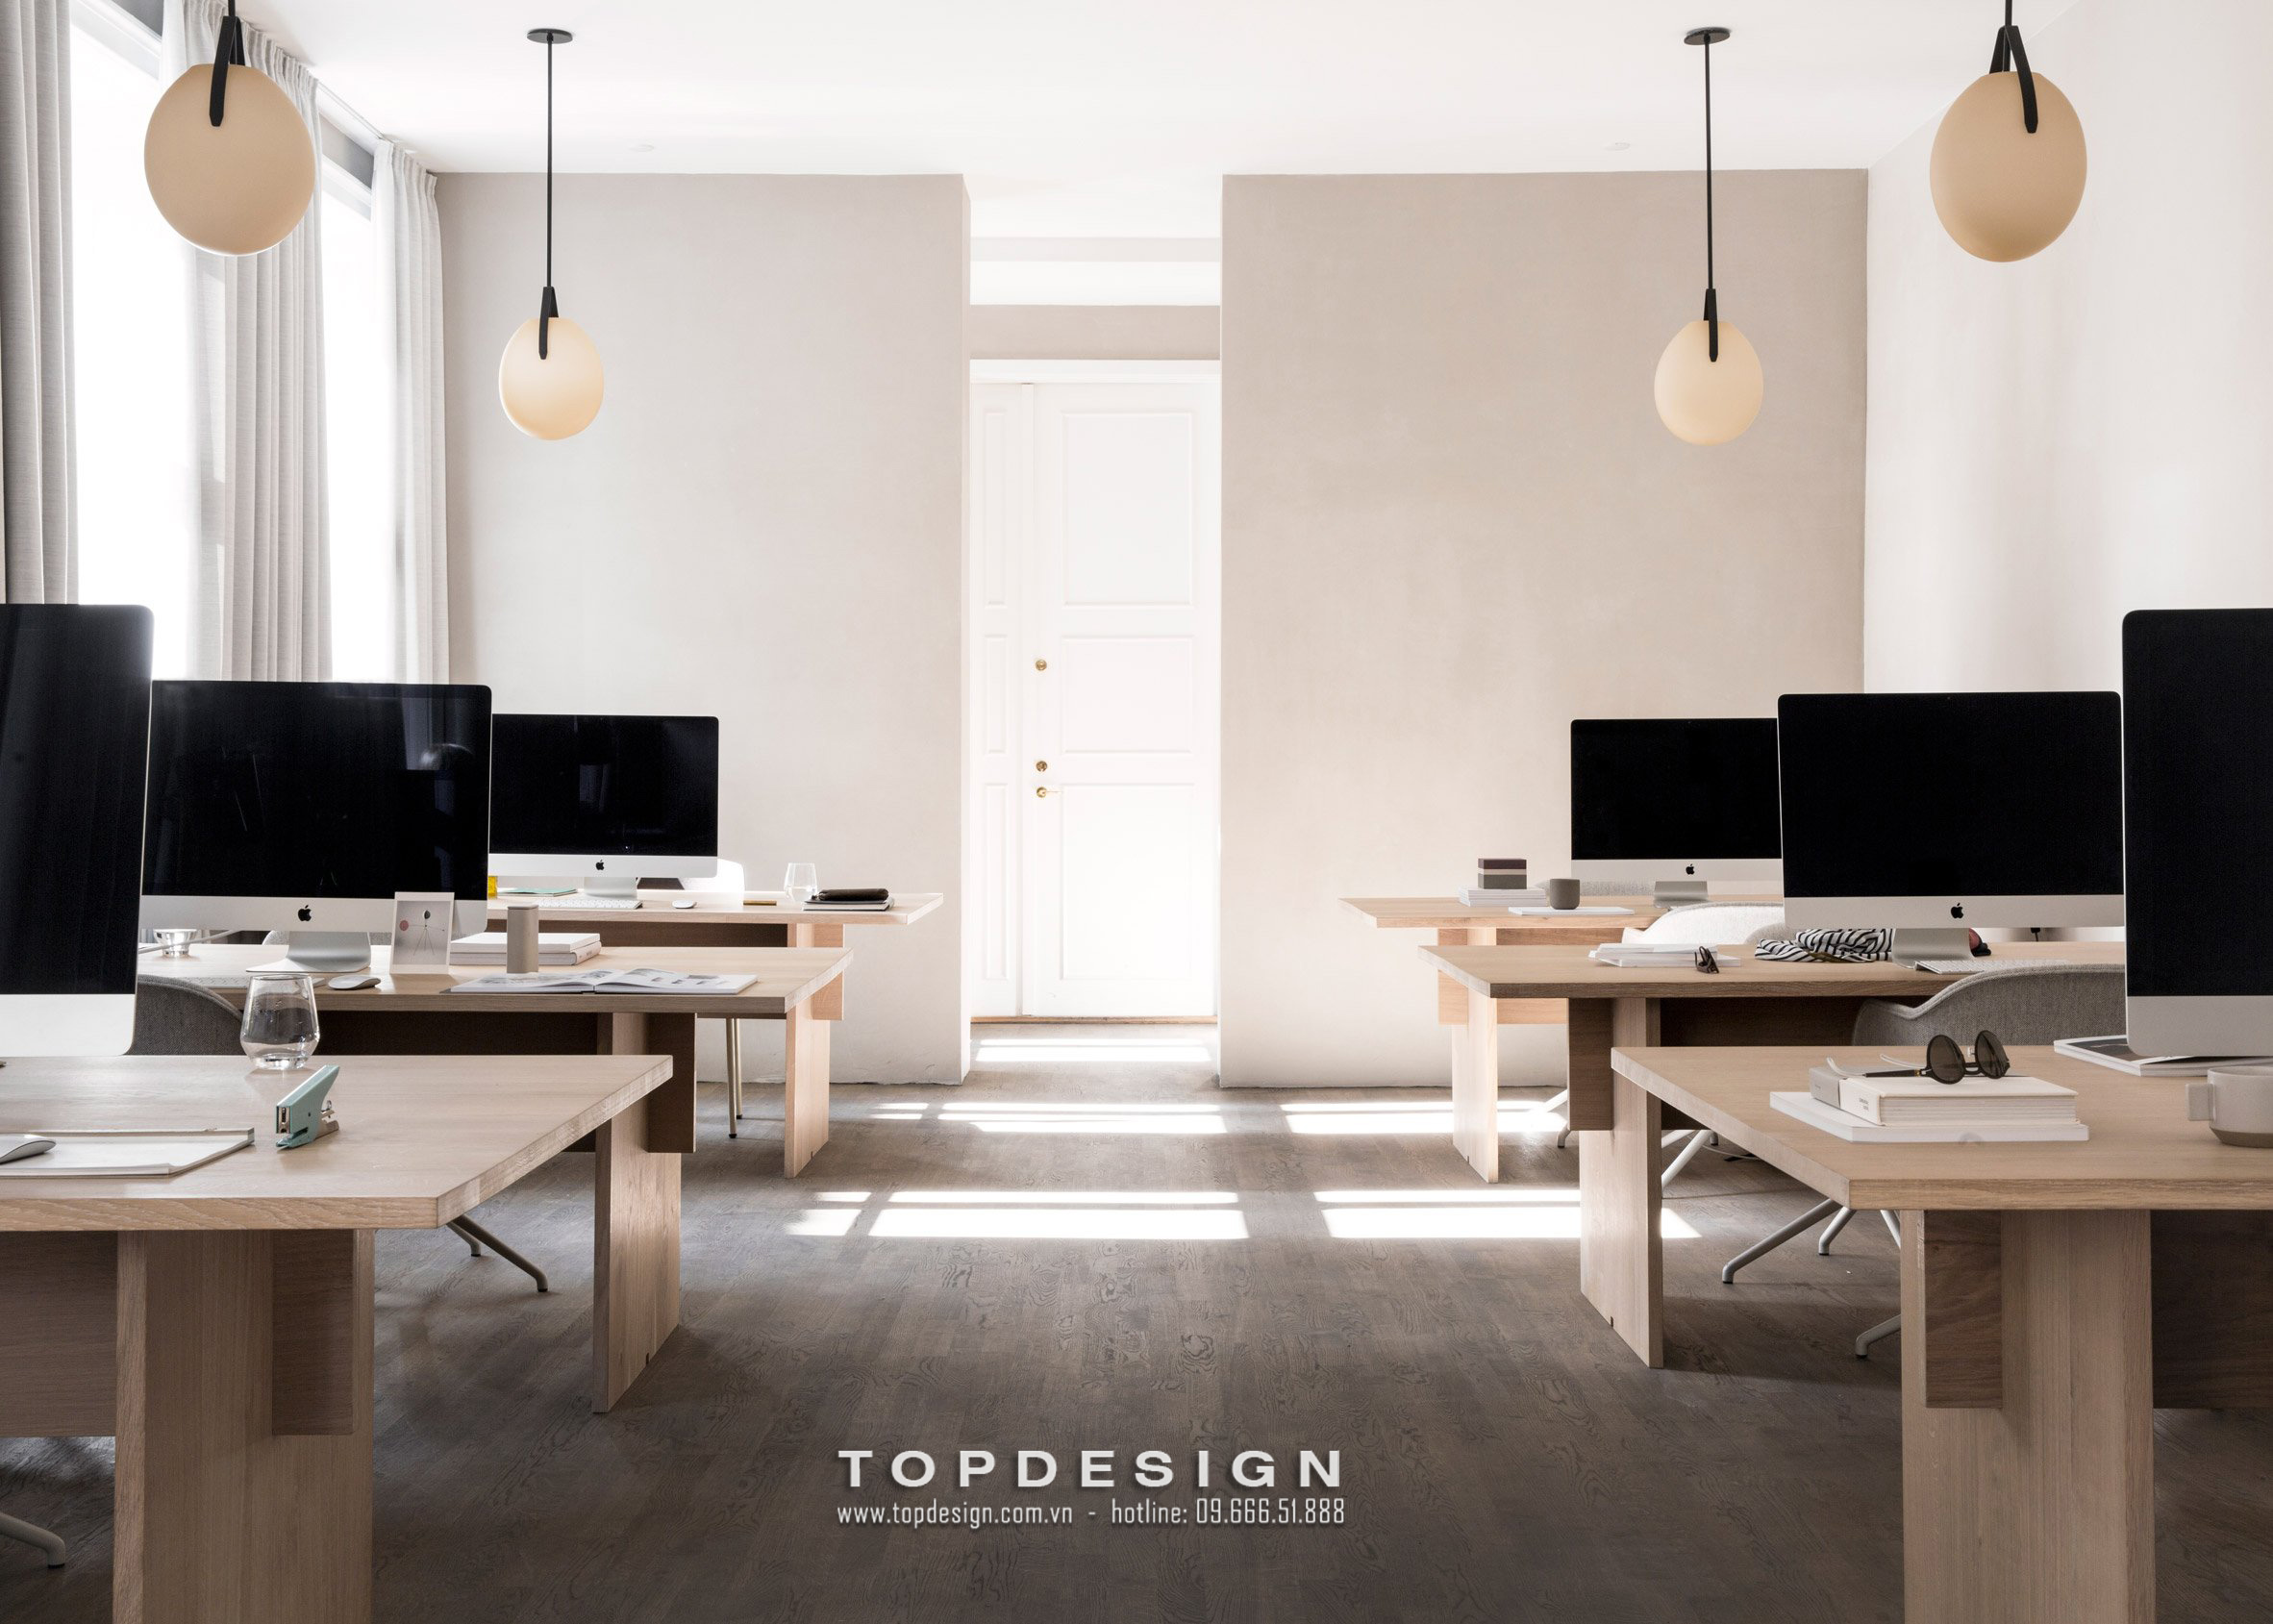 4.Thiết kế văn phòng đơn giản, hiện đại_TOPDESIGN